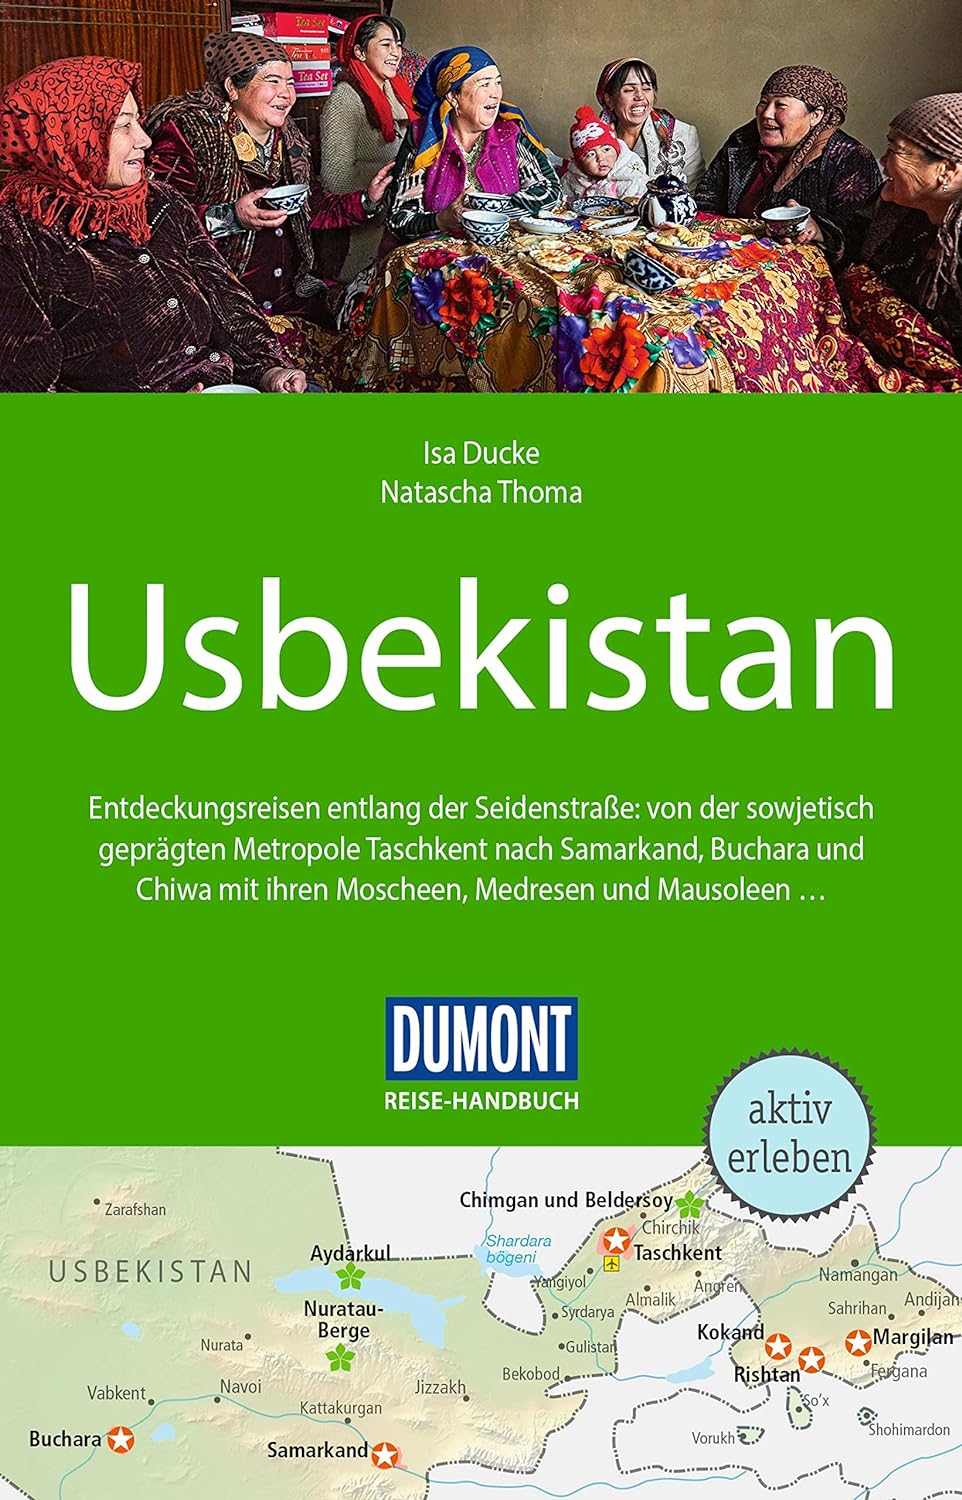  DuMont Reise-Handbuch Reisefhrer Usbekistan von Natascha Thoma und Isa Ducke